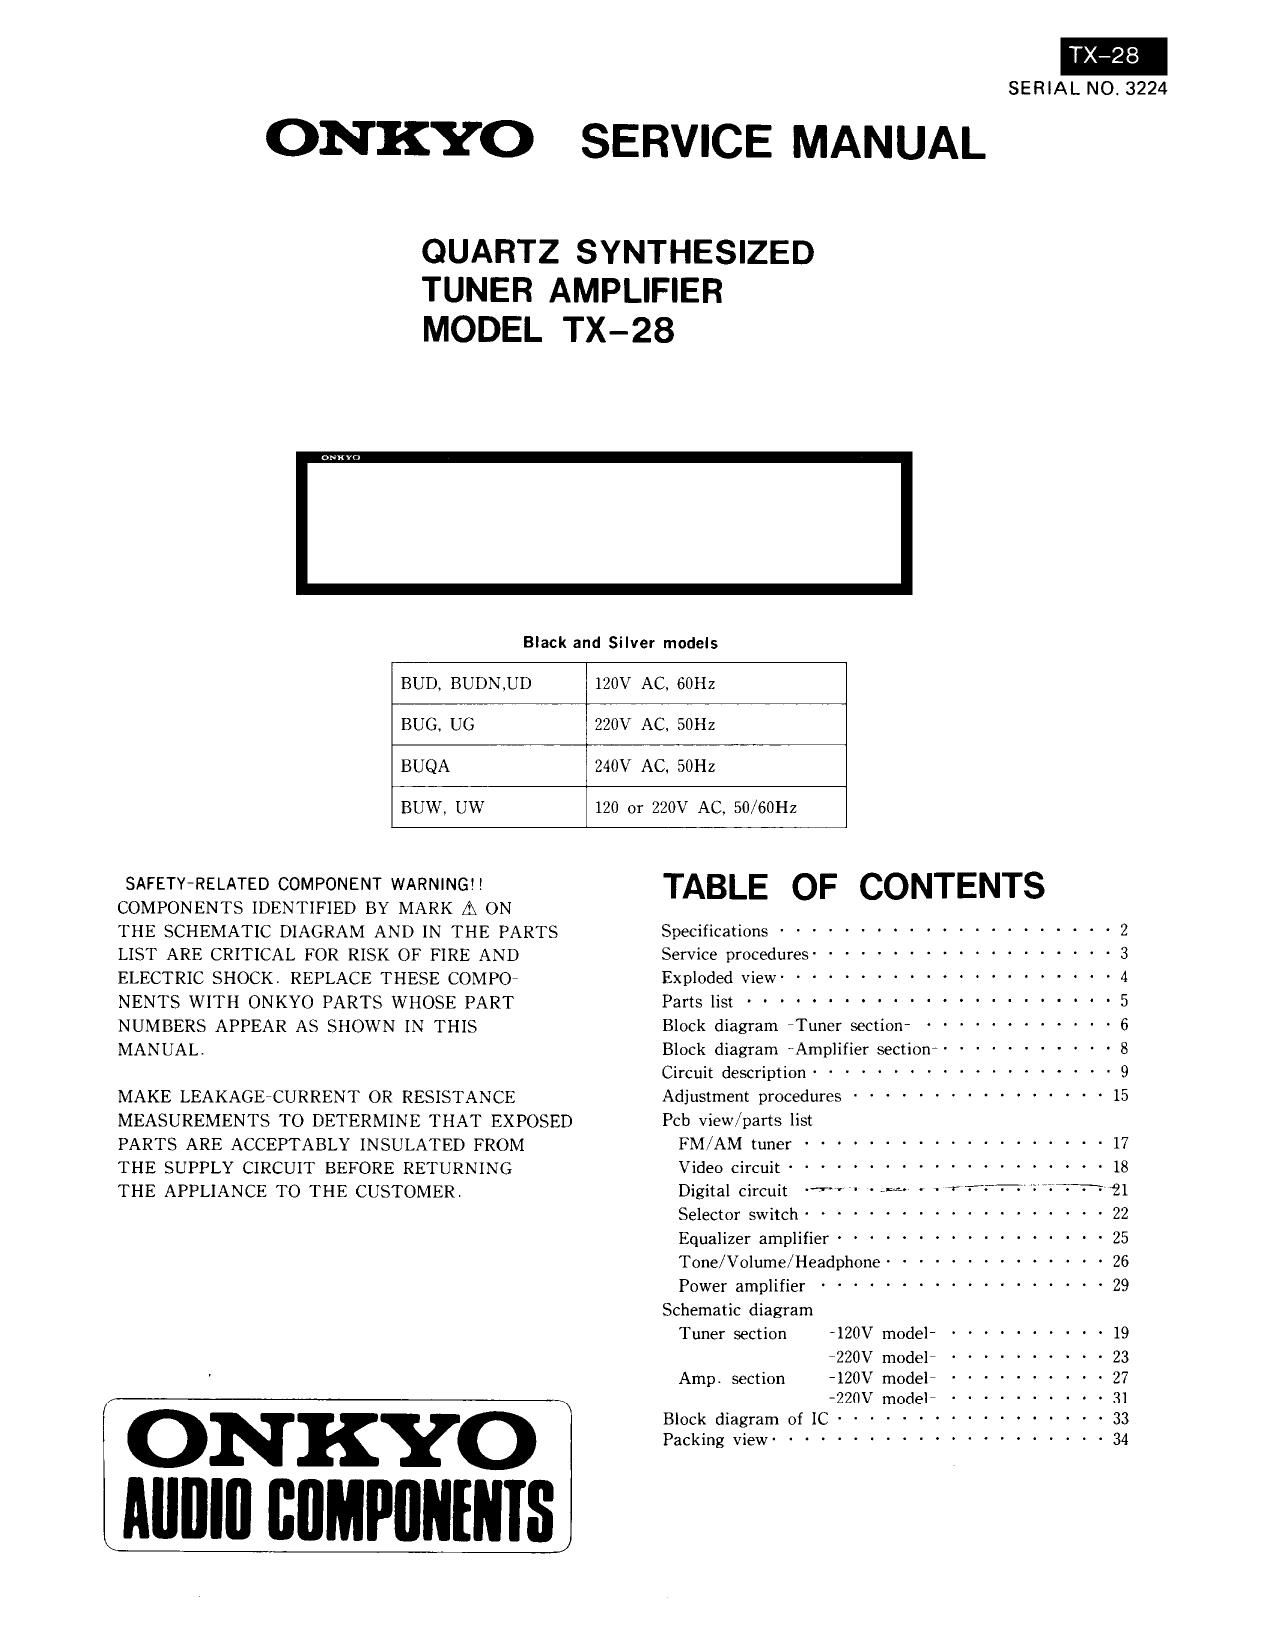 Onkyo TX 28 Service Manual